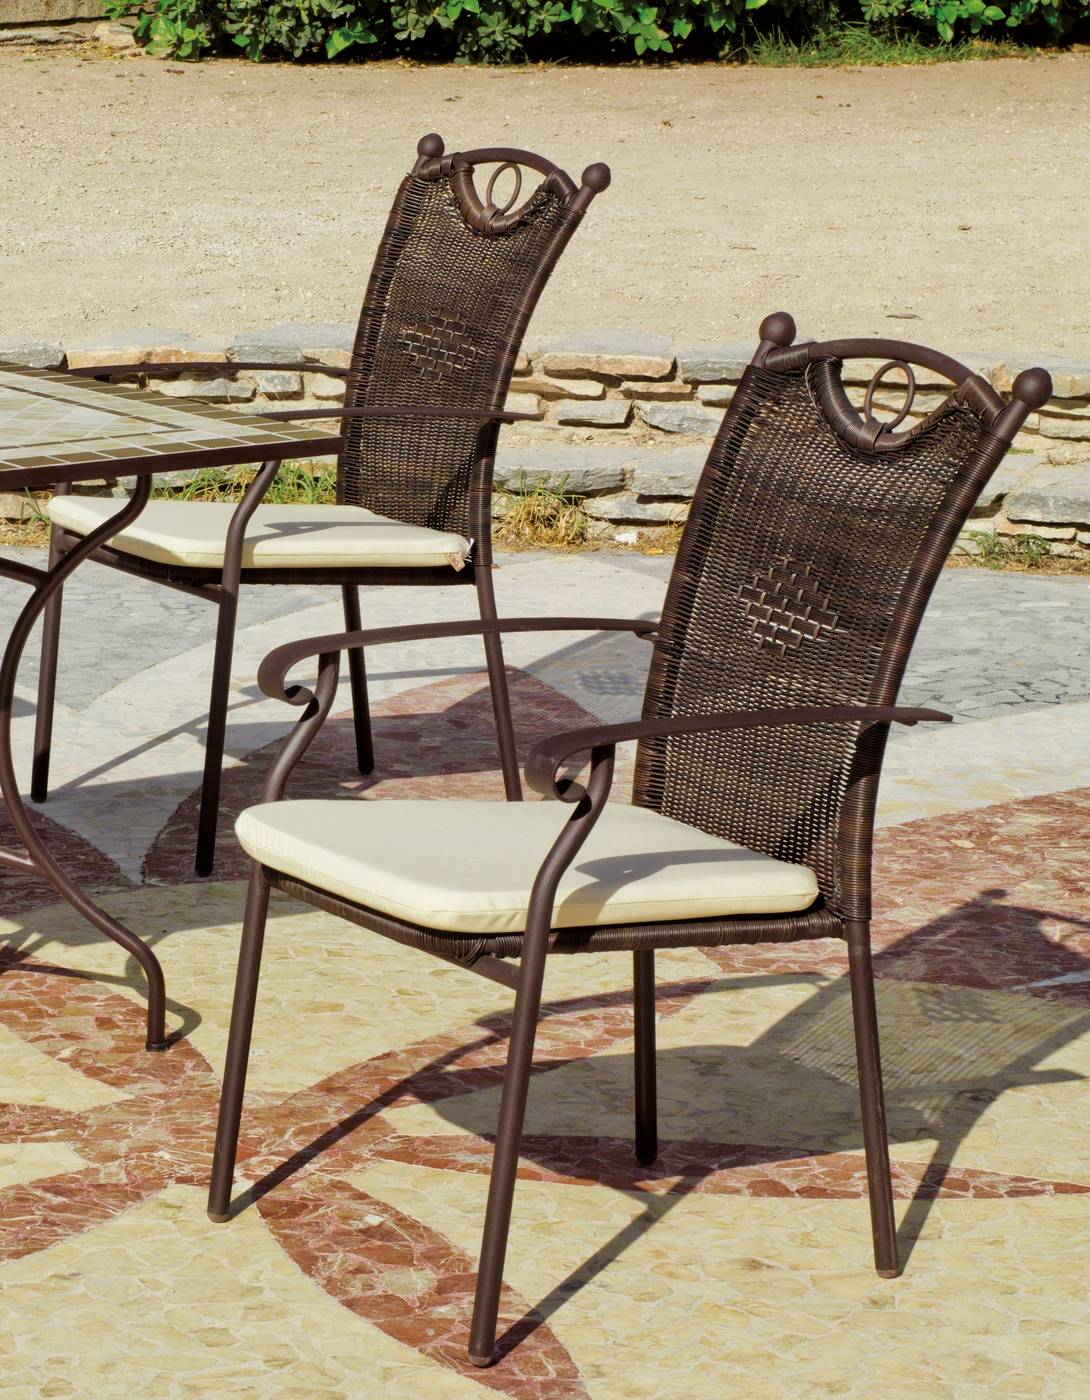 Conjunto Mosaico Roland- Beldey 150-4 - Conjunto para terraza o jardín de forja color bronce: 1 mesa con tablero mosaico + 4 sillones de forja y ratán sintético + 4 cojines.